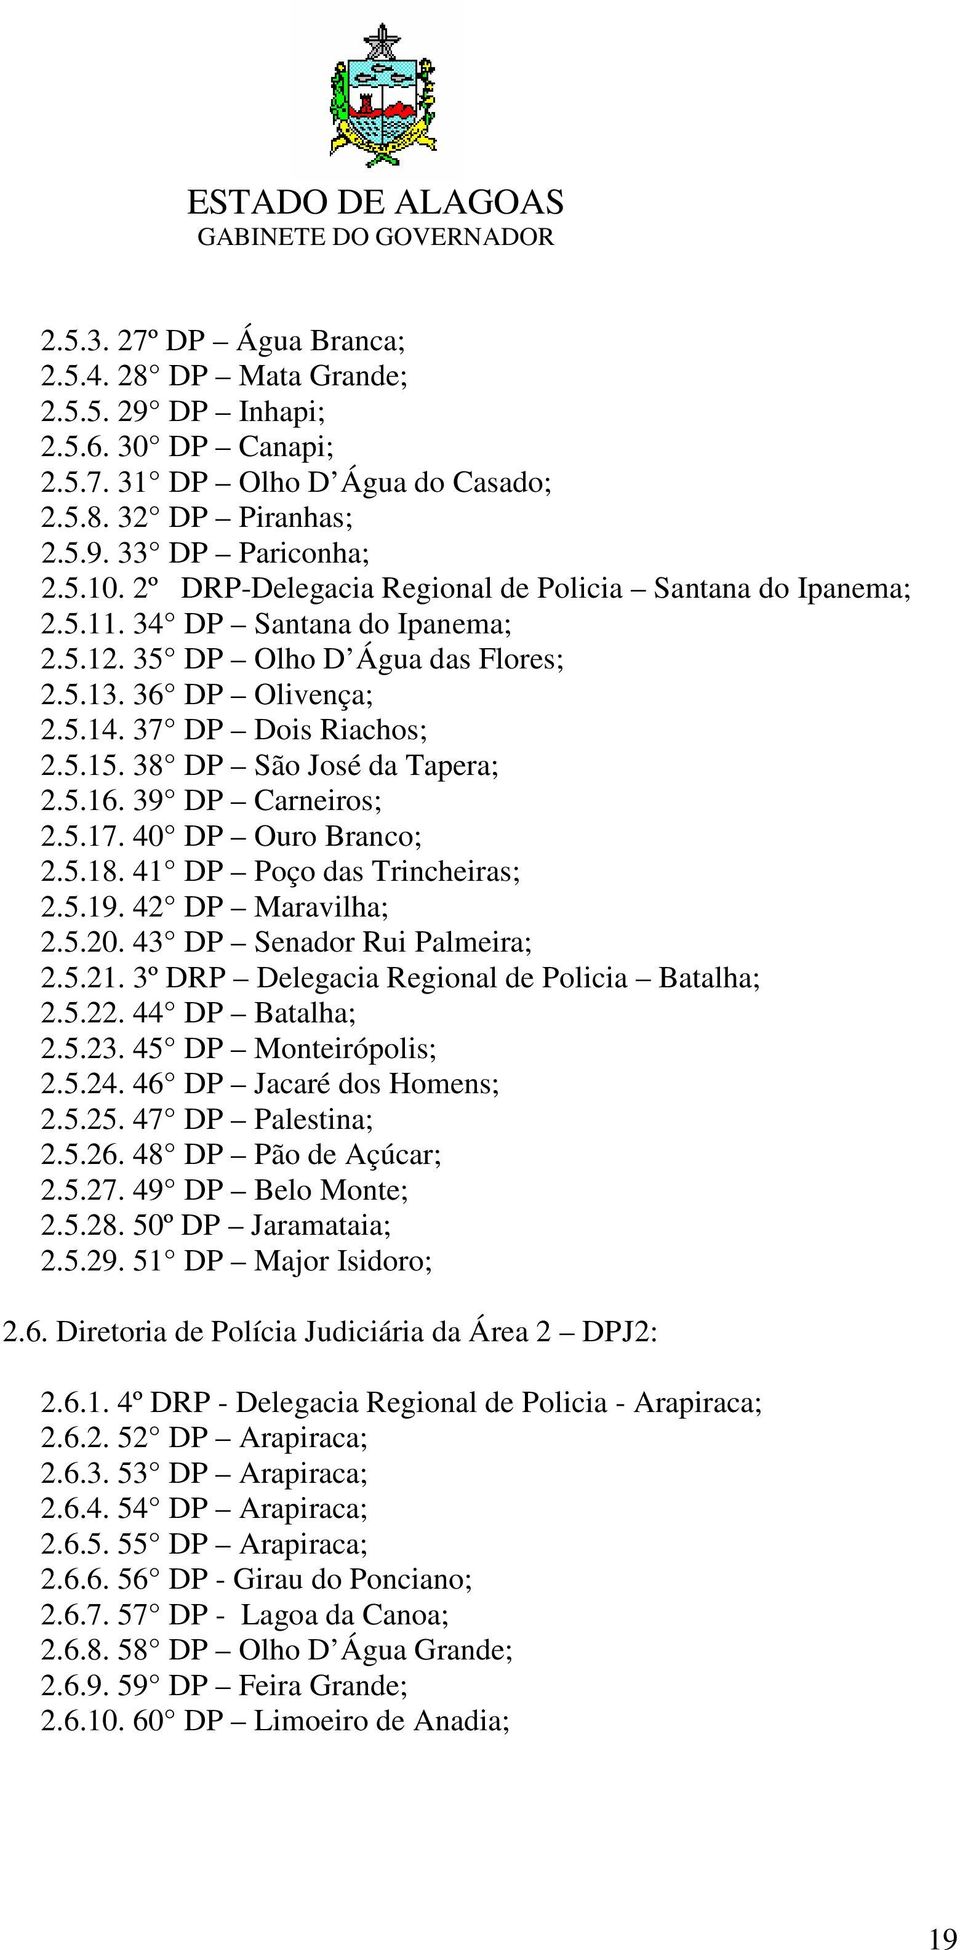 38 DP São José da Tapera; 2.5.16. 39 DP Carneiros; 2.5.17. 40 DP Ouro Branco; 2.5.18. 41 DP Poço das Trincheiras; 2.5.19. 42 DP Maravilha; 2.5.20. 43 DP Senador Rui Palmeira; 2.5.21.